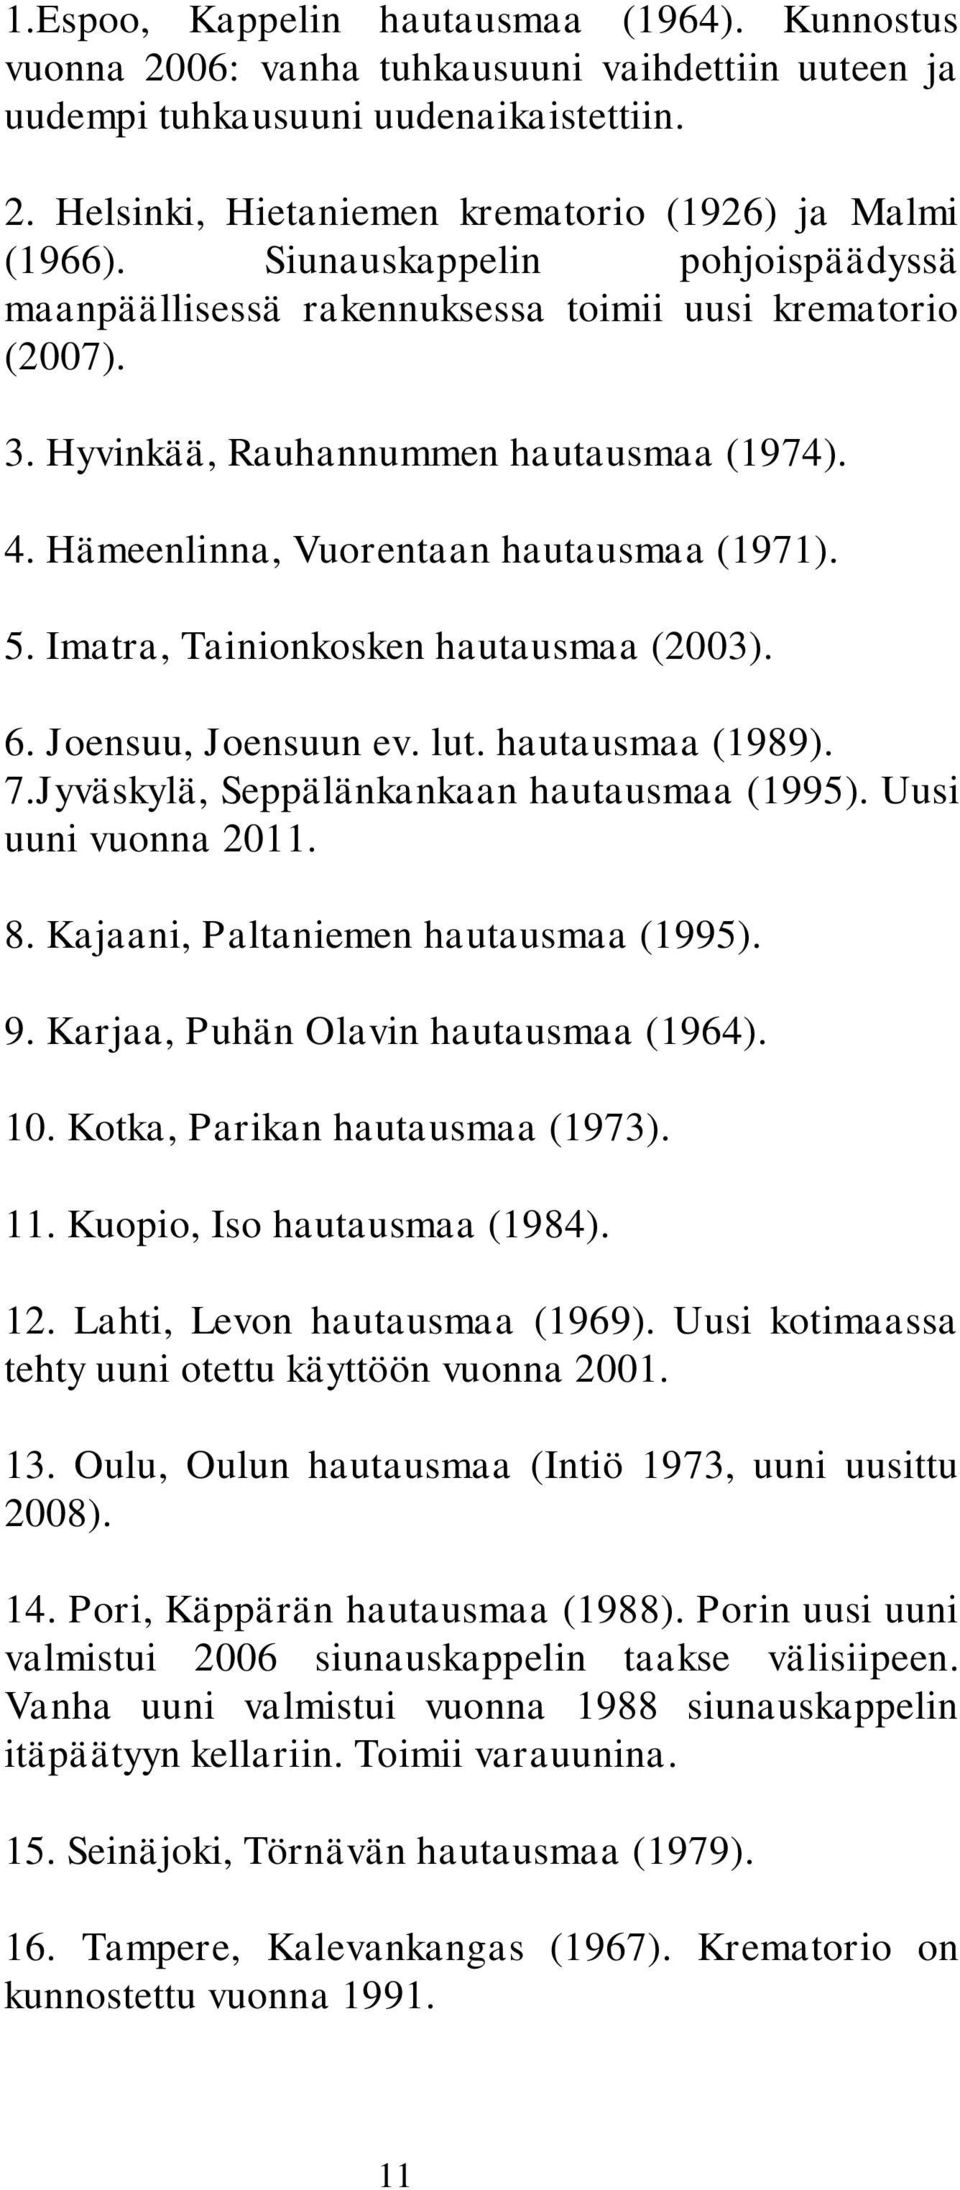 Imatra, Tainionkosken hautausmaa (2003). 6. Joensuu, Joensuun ev. lut. hautausmaa (1989). 7.Jyväskylä, Seppälänkankaan hautausmaa (1995). Uusi uuni vuonna 2011. 8.